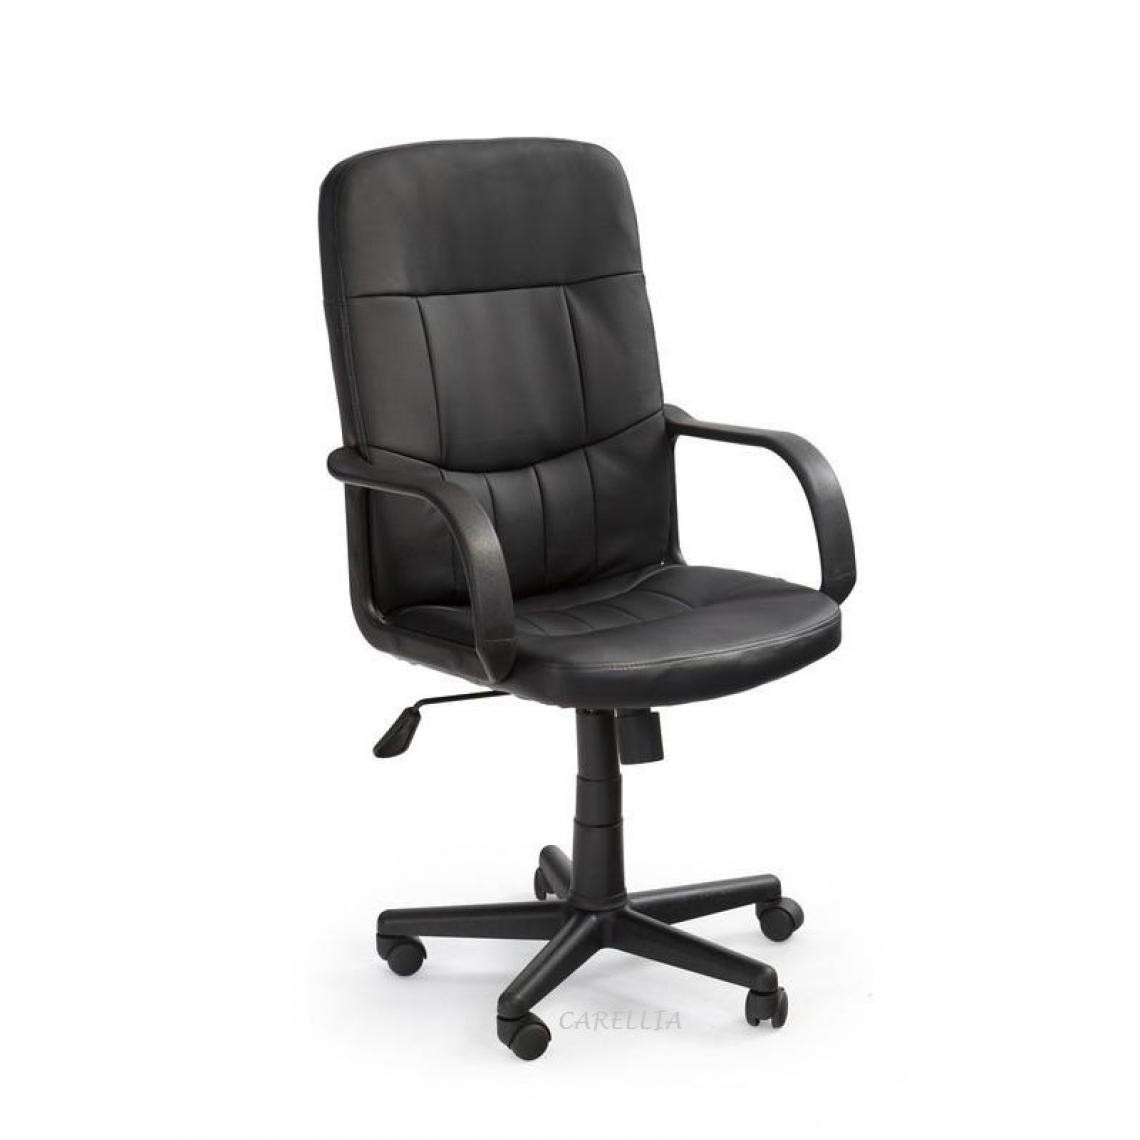 Carellia - DENZEL chaise de bureau en cuir synthétique - Noir - Chaises